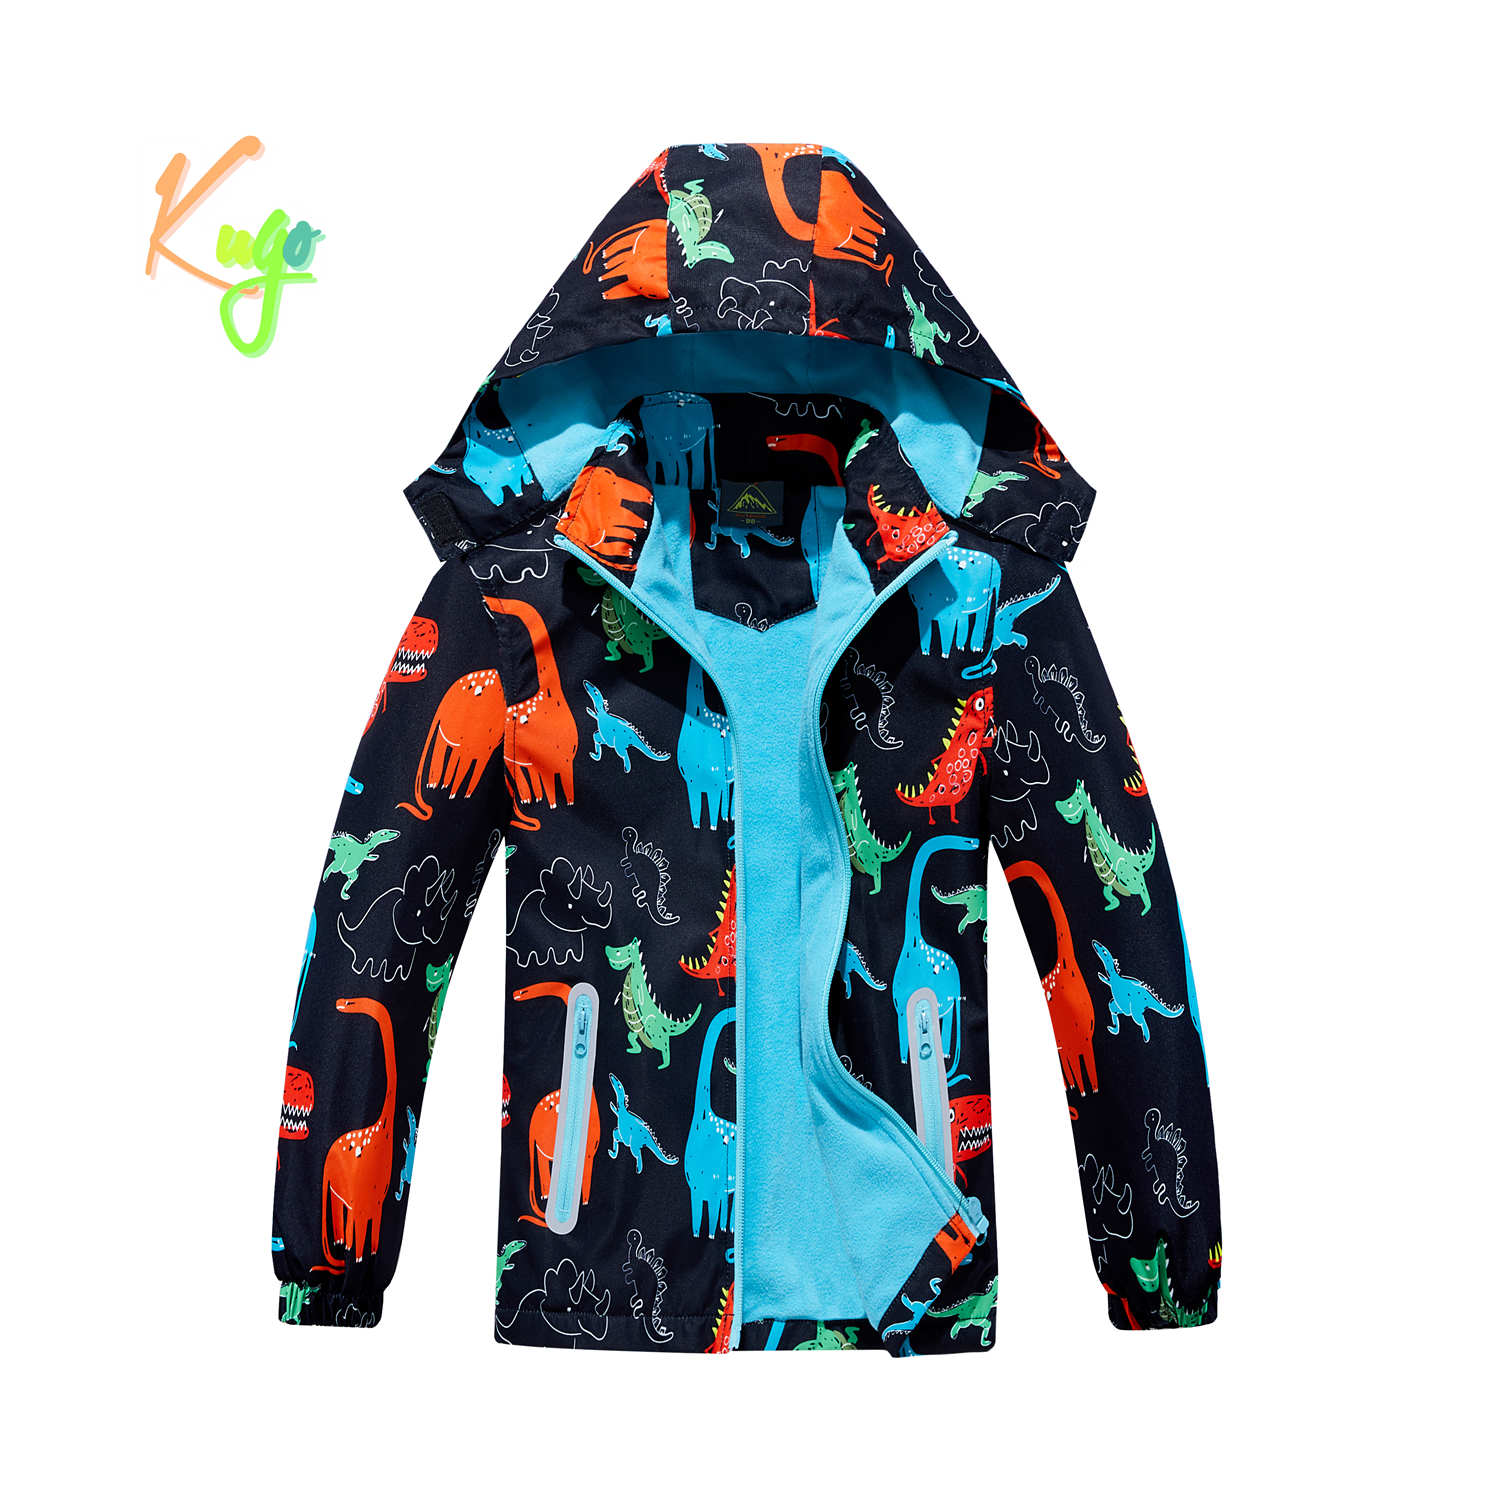 Chlapecká podzimní bunda, zateplená - KUGO B2857, černá, dinosauři Barva: Černá, Velikost: 116